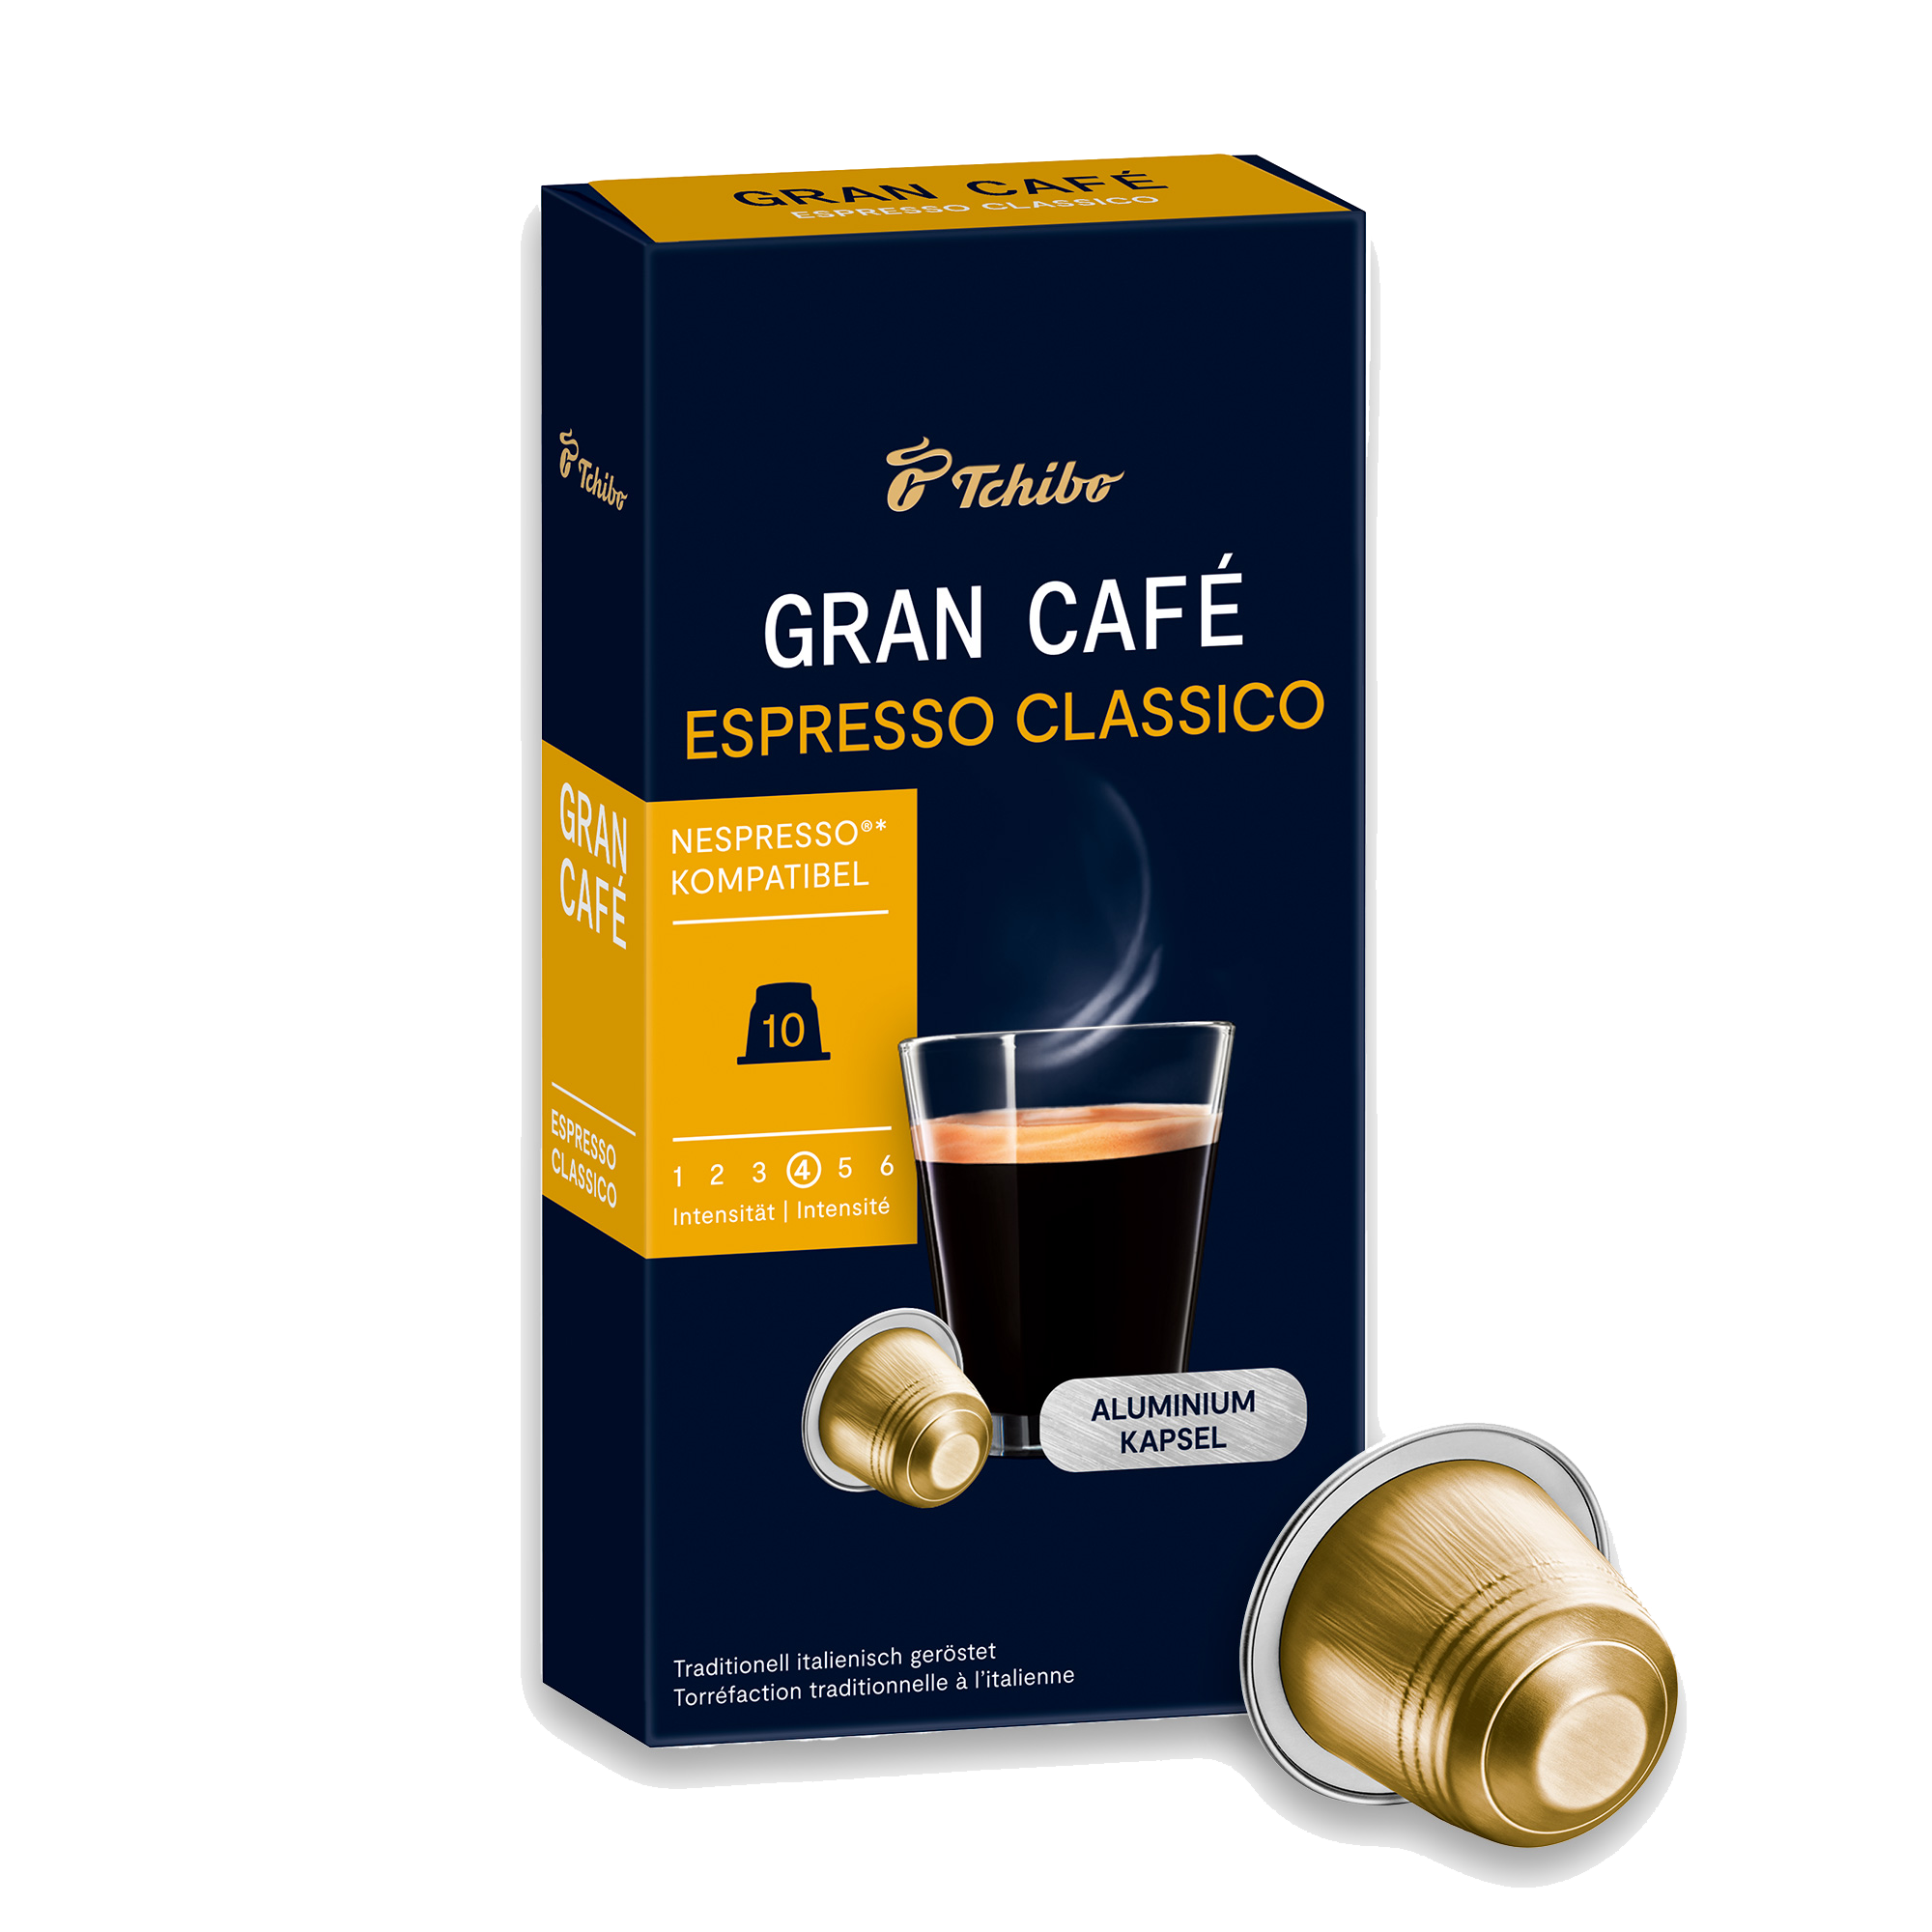 Gran Café Nespresso®* Pods Espresso Variety pack